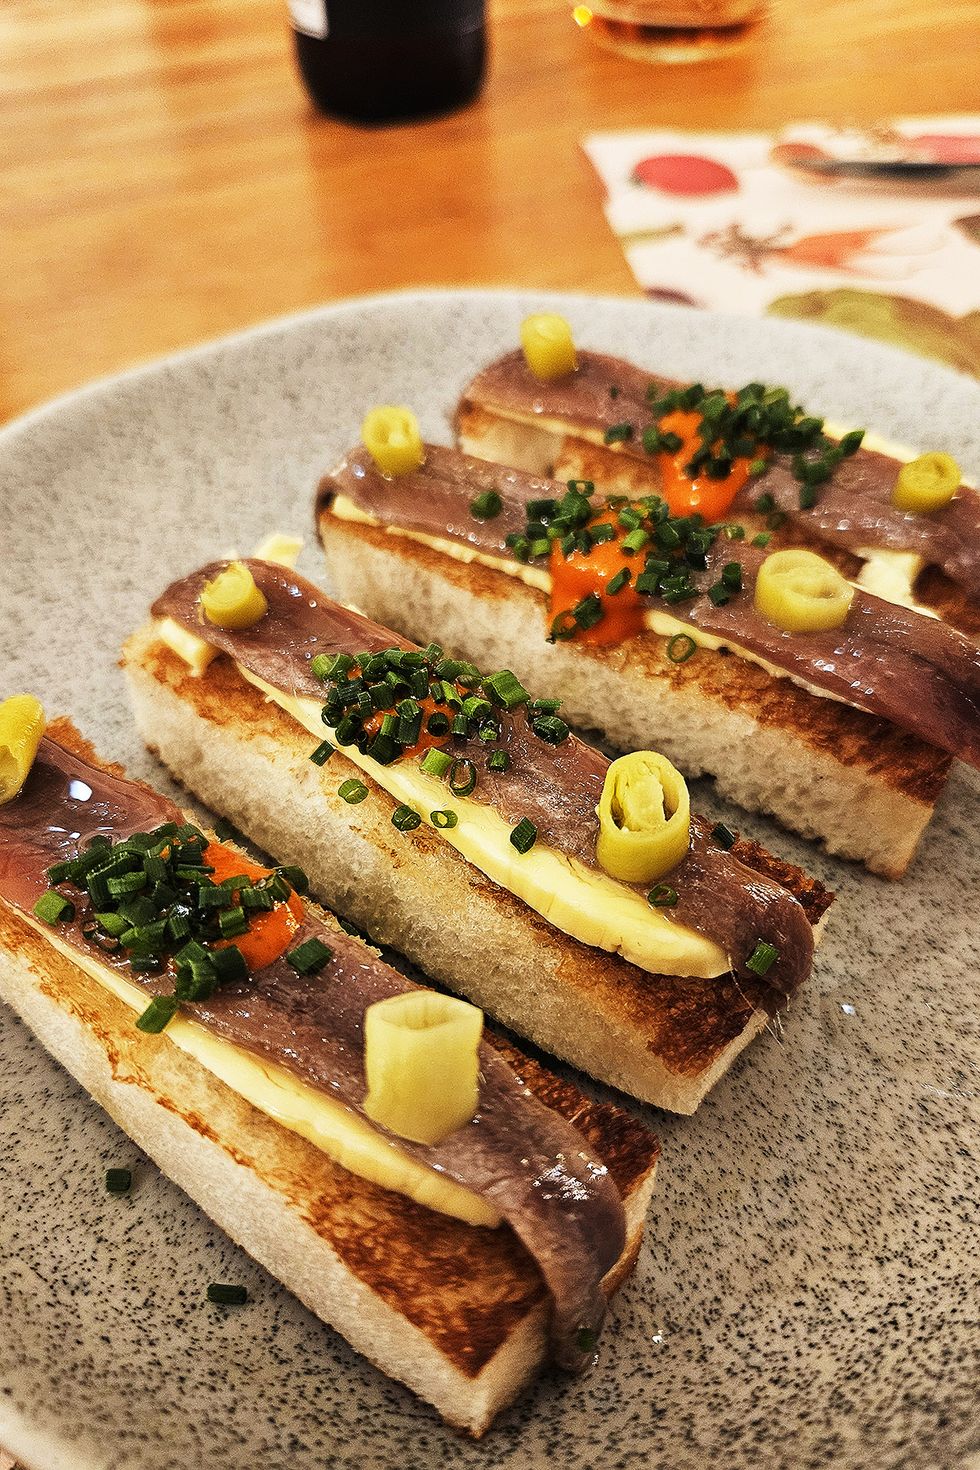 ﻿anchoas con mantequilla ahumada en brioche, plato del restaurante malabar bistró en becerril de la sierra, madrid